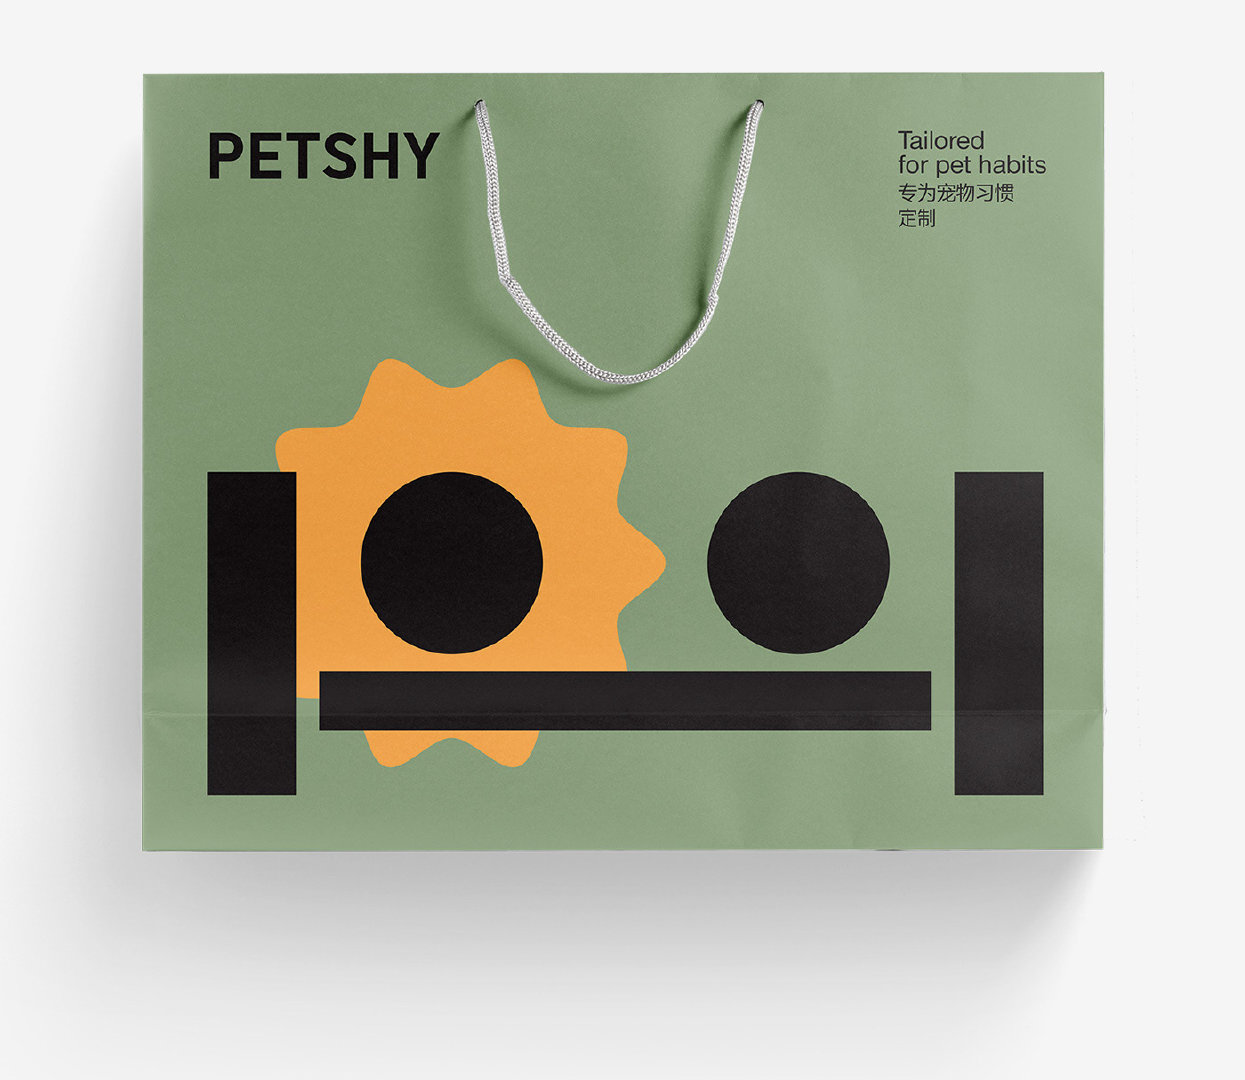 宠物用品品牌PETSHY视觉和包装设计